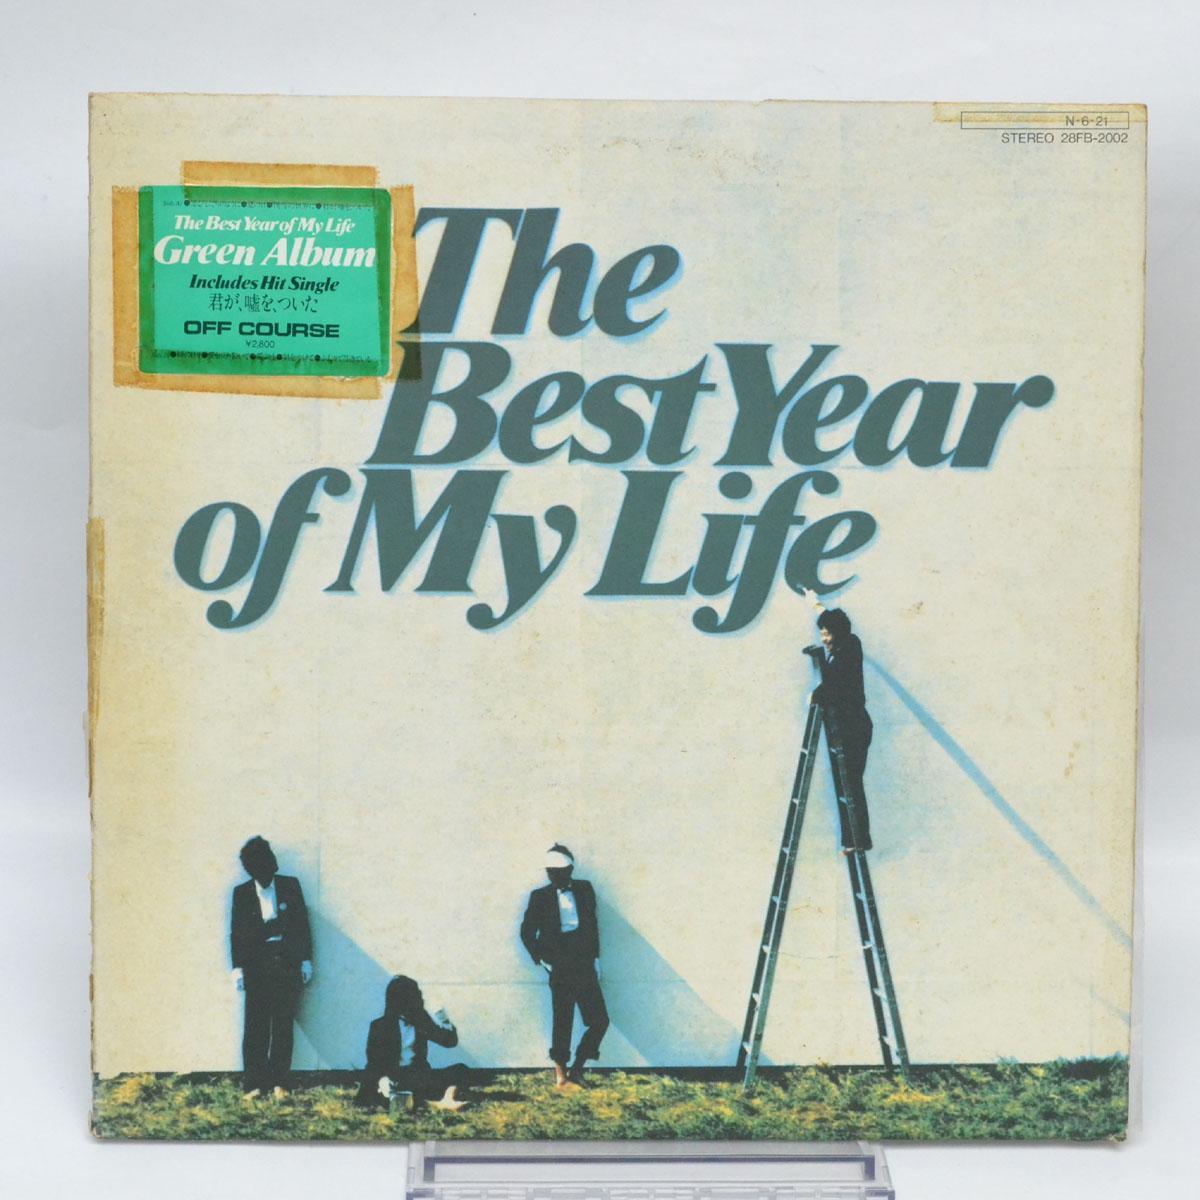 LP записывает курс "Лучший год в моей жизни" 28FB-2002